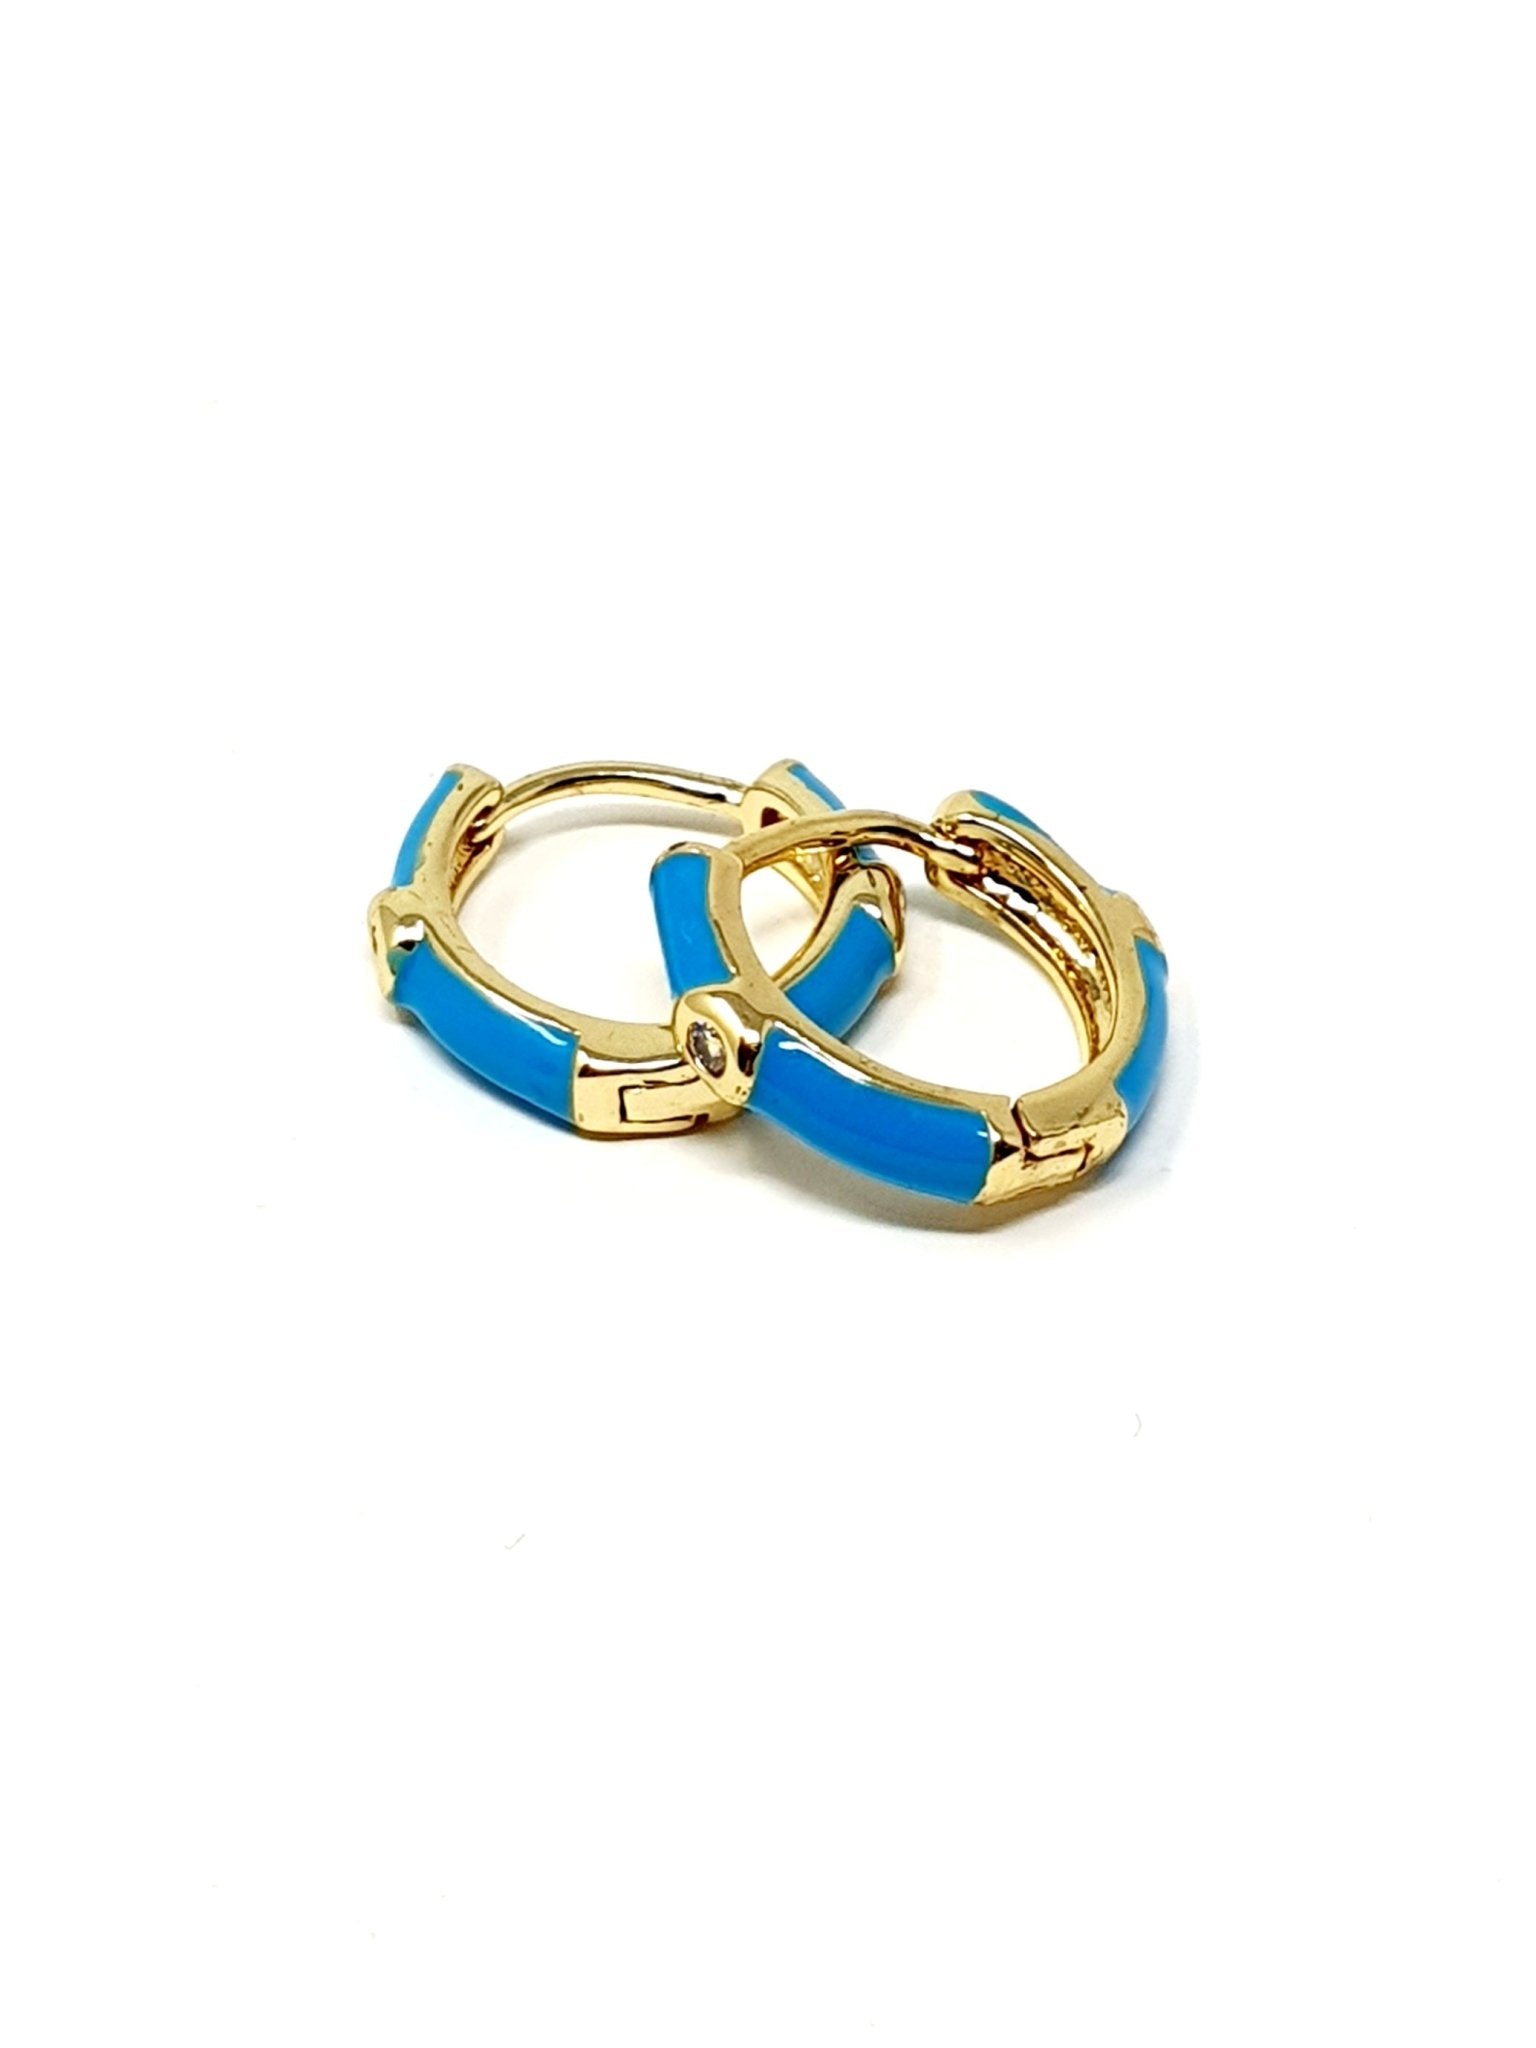 Coppia di mini hoops "Positano” gold smaltati azzurro fluo - 333HOPE333